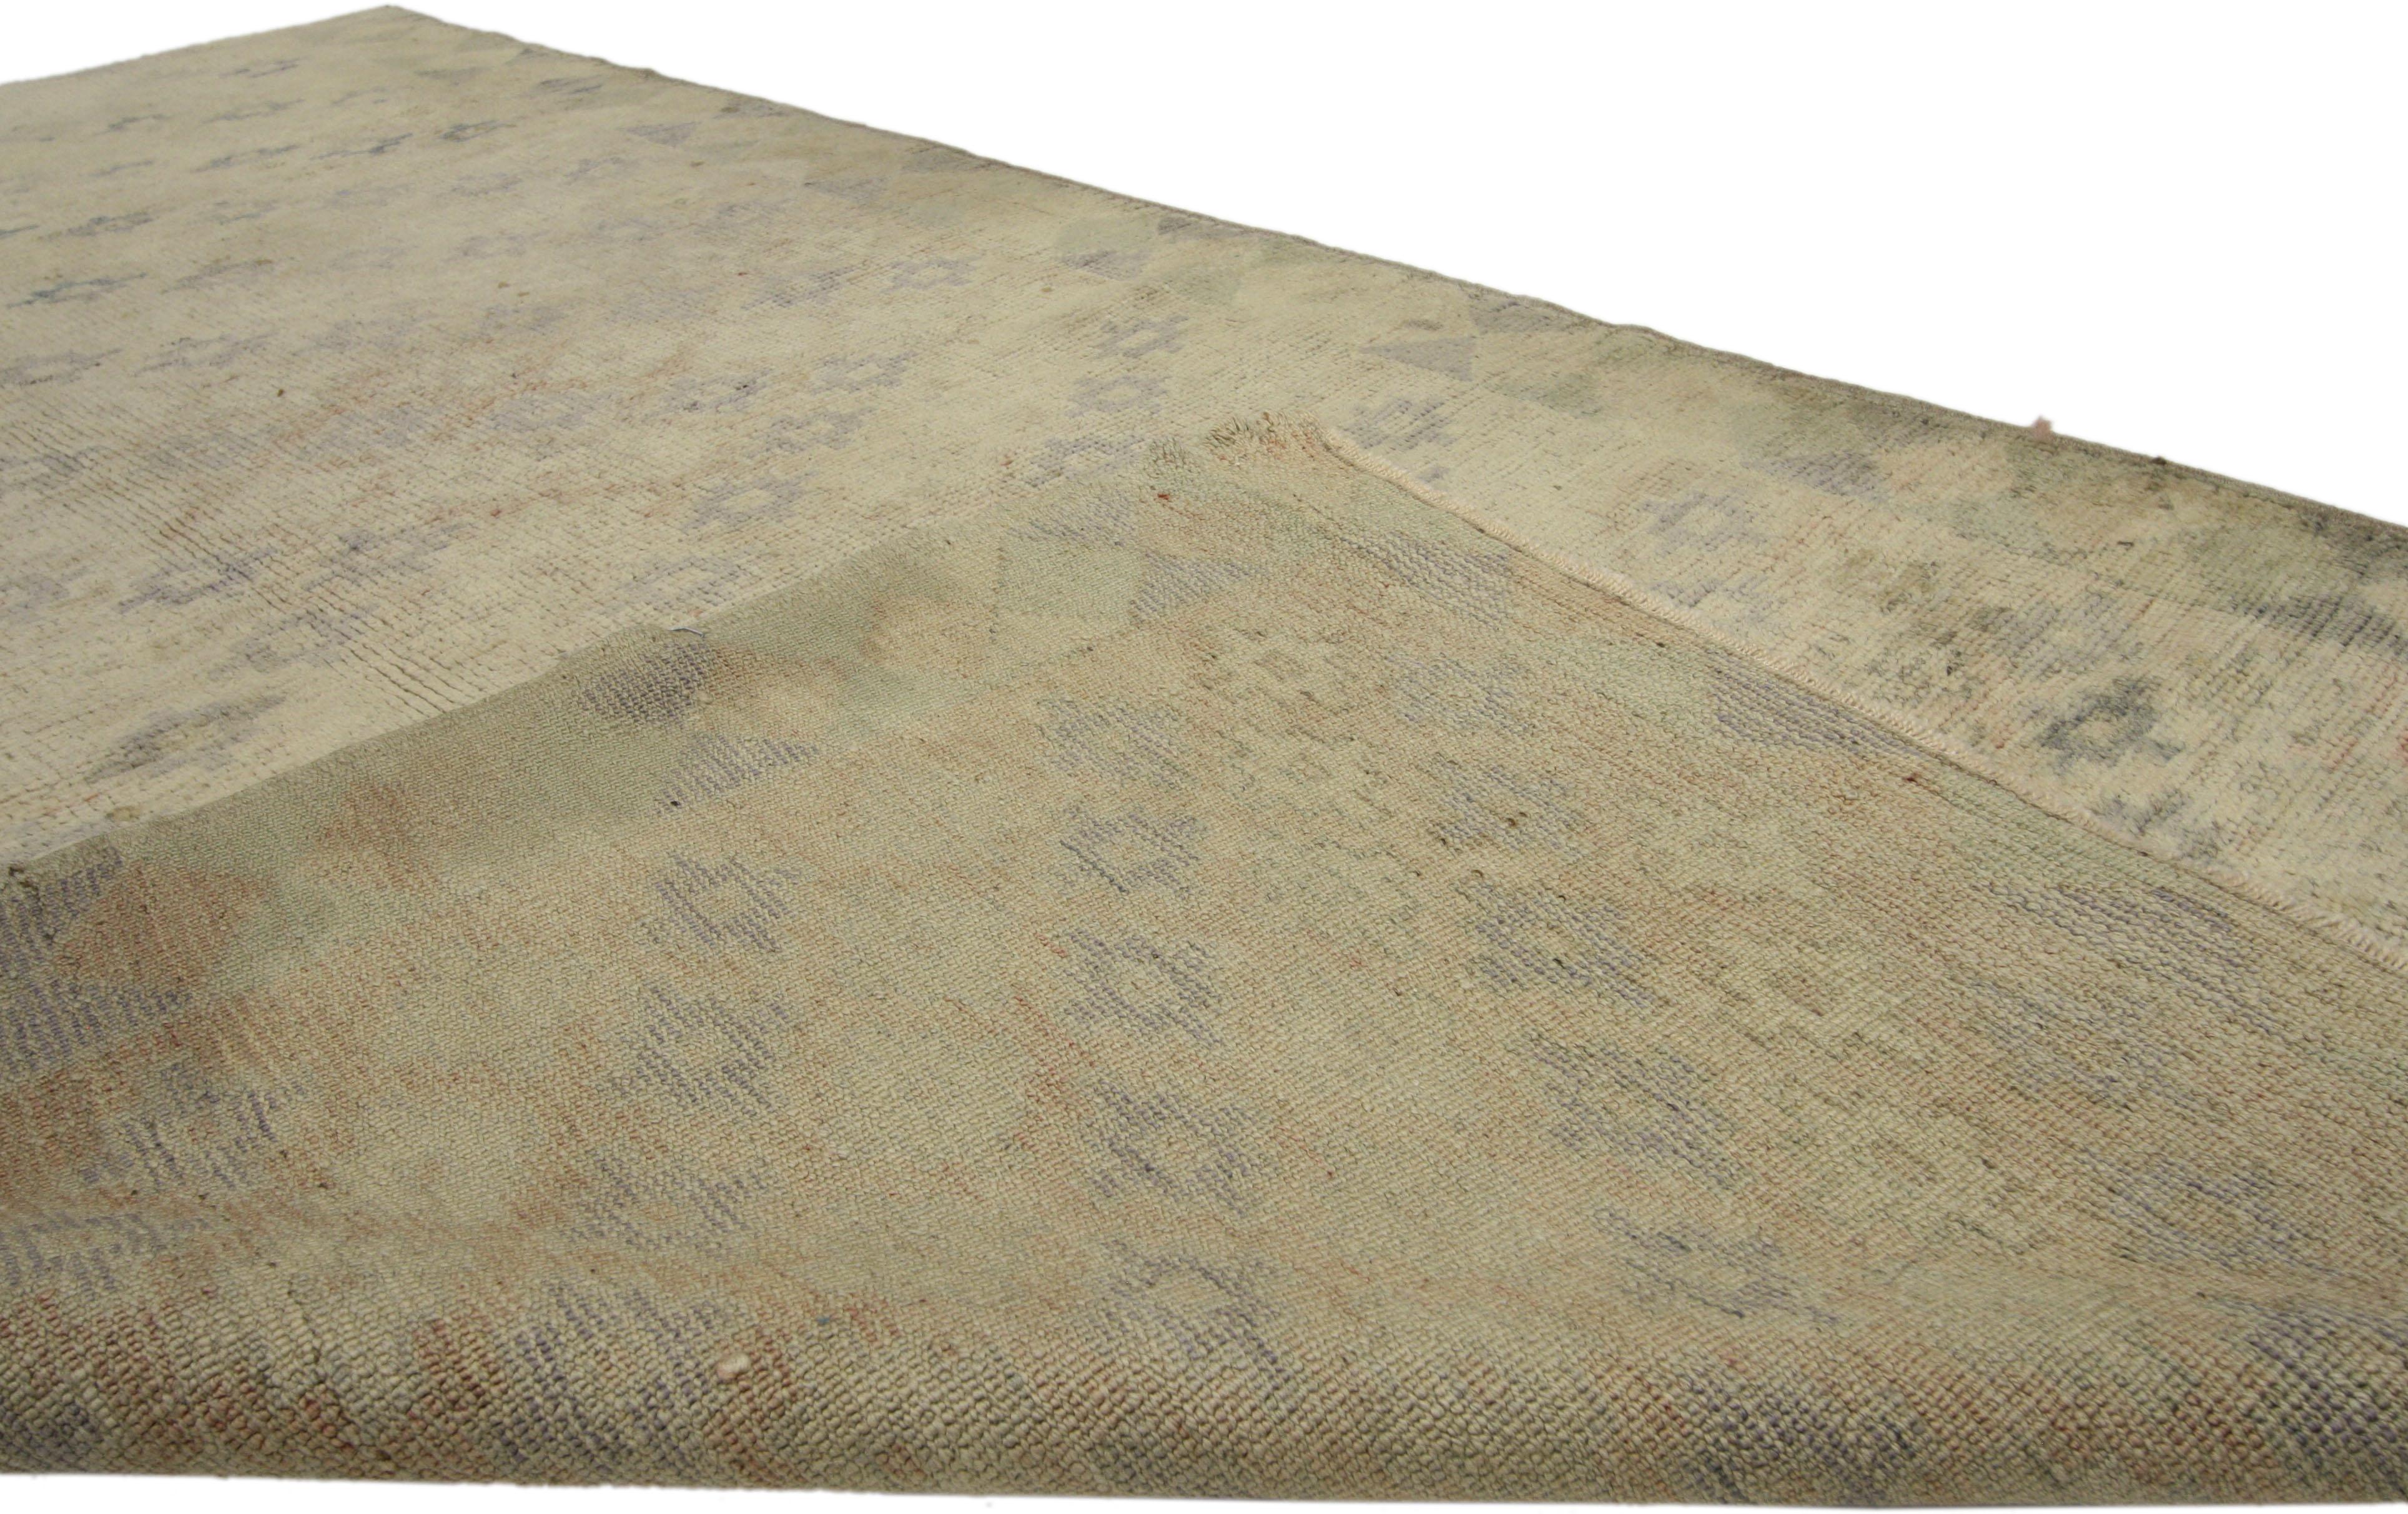 50072, tapis turc vintage Oushak au style Art Déco cubiste et aux couleurs sourdes. Ce tapis Oushak turc vintage en laine nouée à la main présente un motif géométrique en treillis sur tout le pourtour d'un champ beige abrasé. Des rangées décalées de